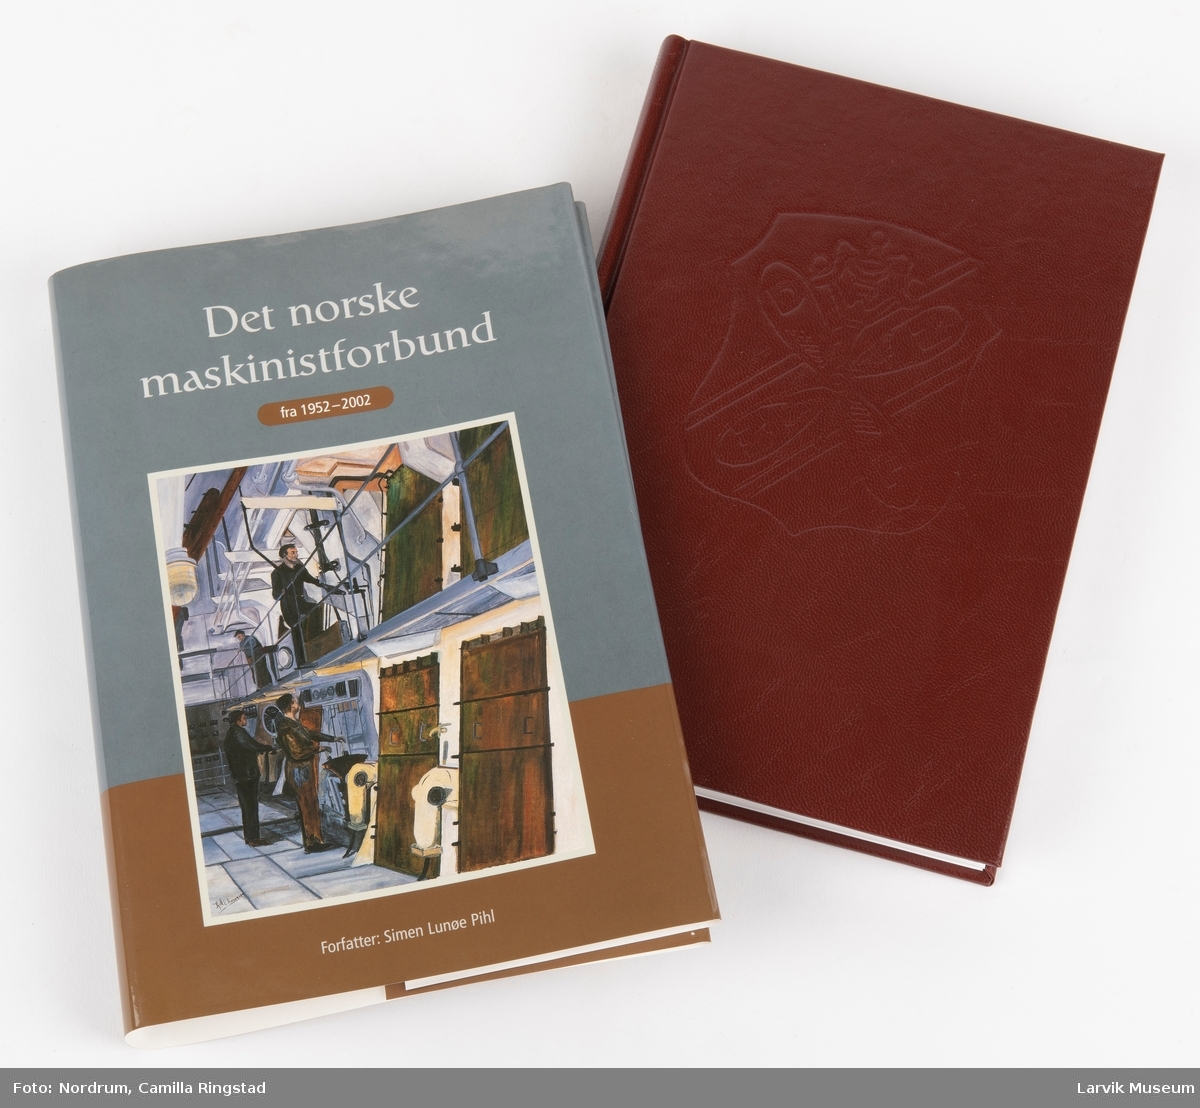 Bok med omslag om Det norske maskinistforbund fra 1952 - 2002 v/forfatter Simen unøe Phil.